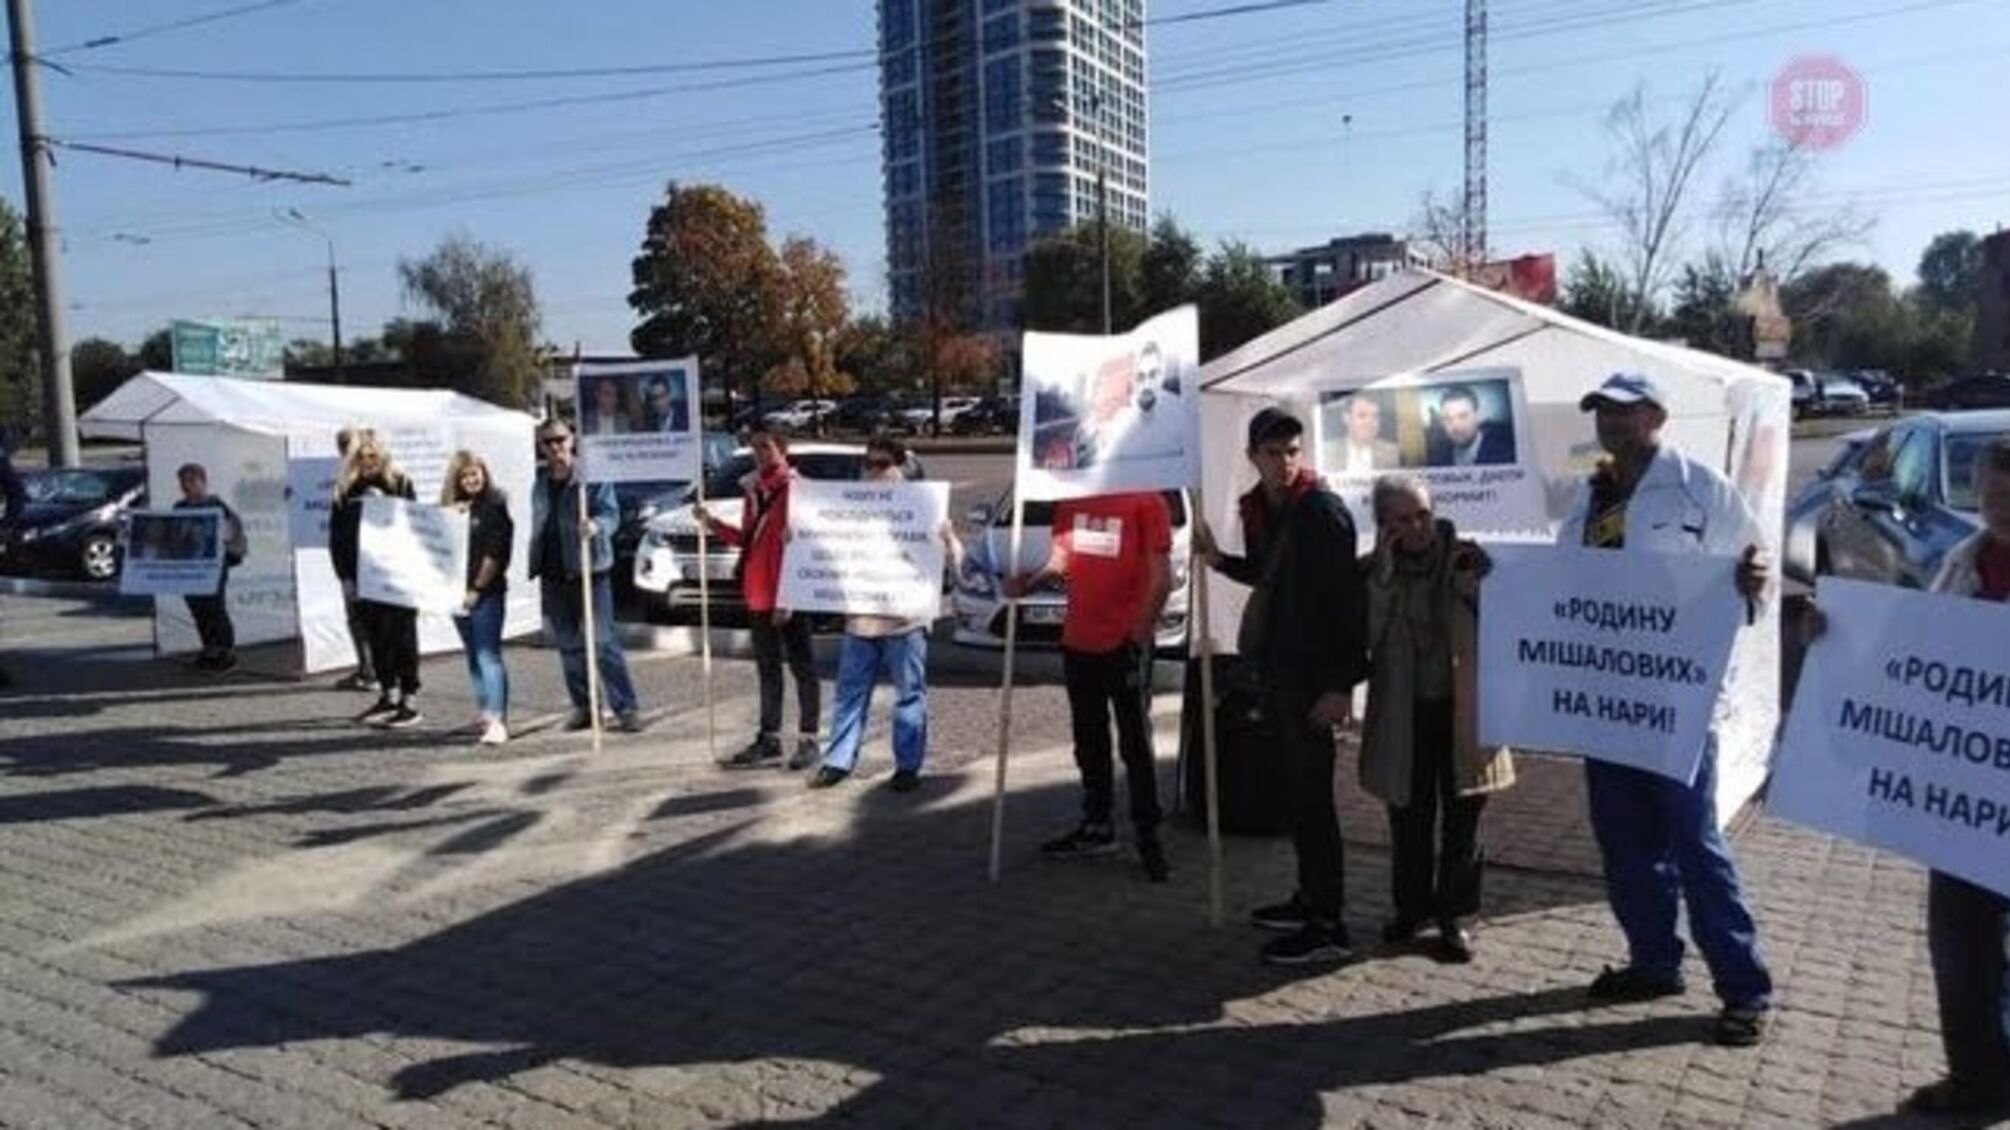 Після журналістського розслідування щодо родини корупціонерів Мішалових у Дніпрі розпочались масові протести (фото)